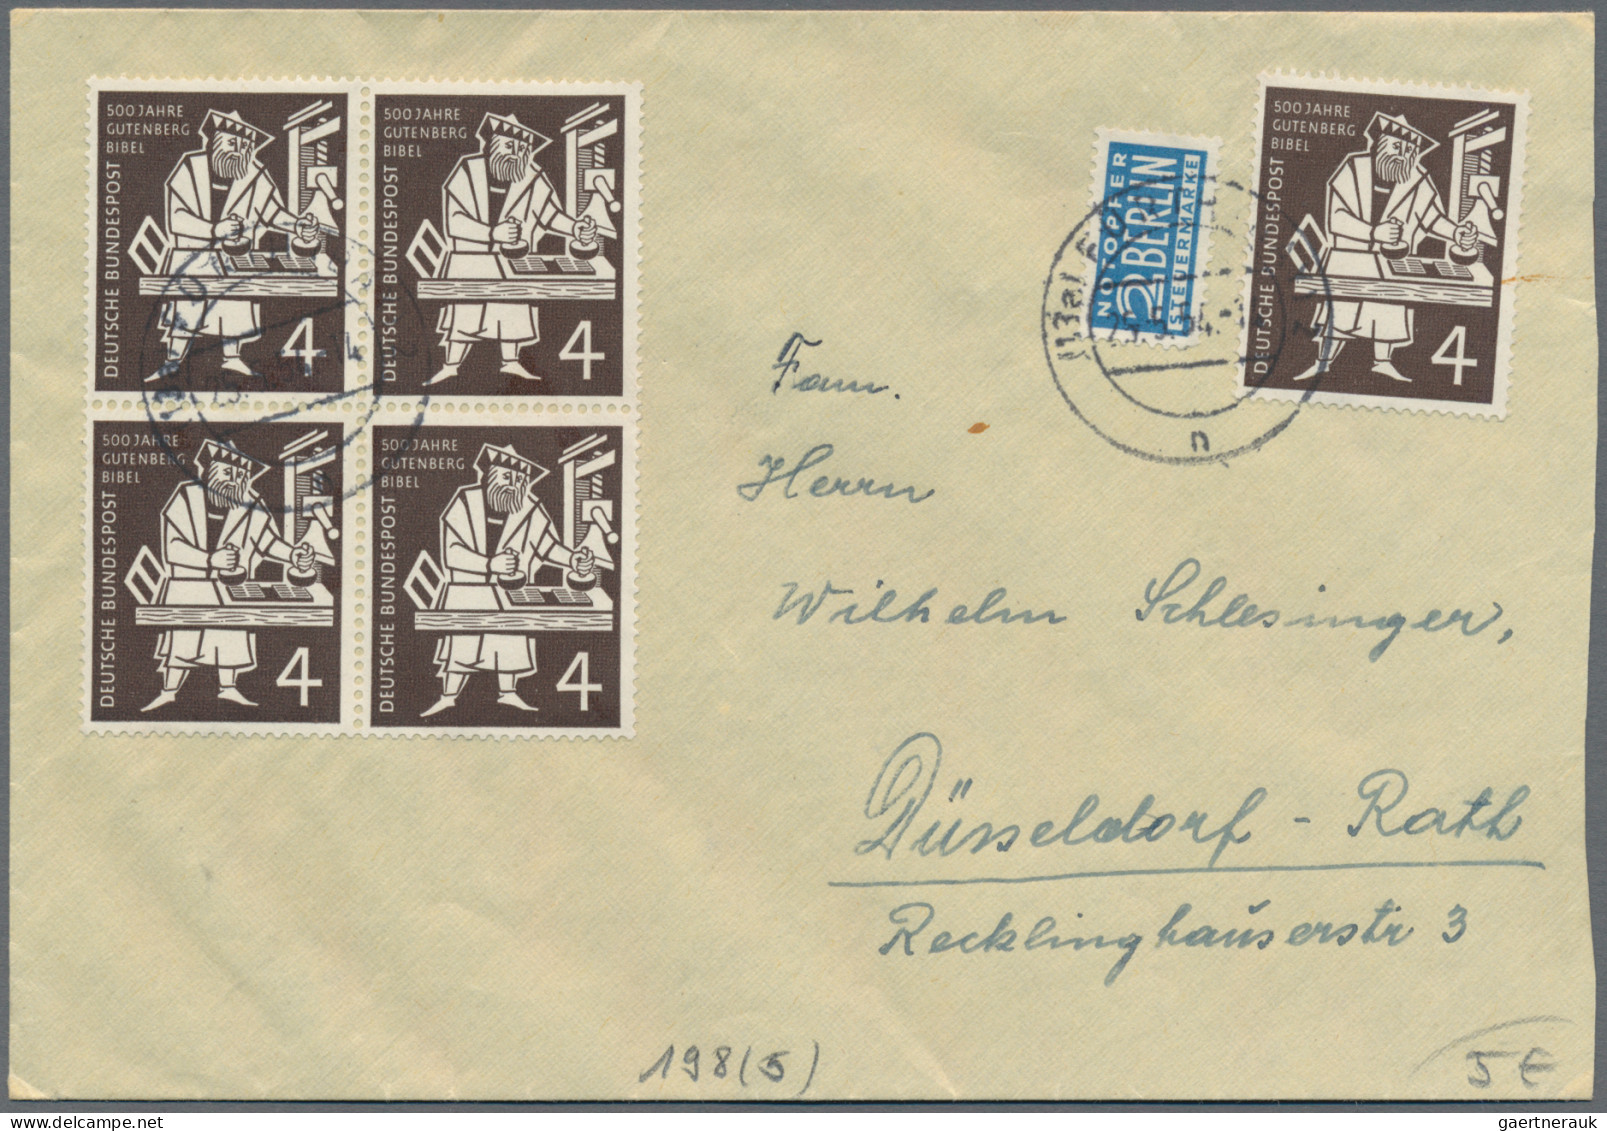 Nachlässe: DEUTSCHLAND NACH 1945, Posten mit hunderten von Briefen, Karten und G